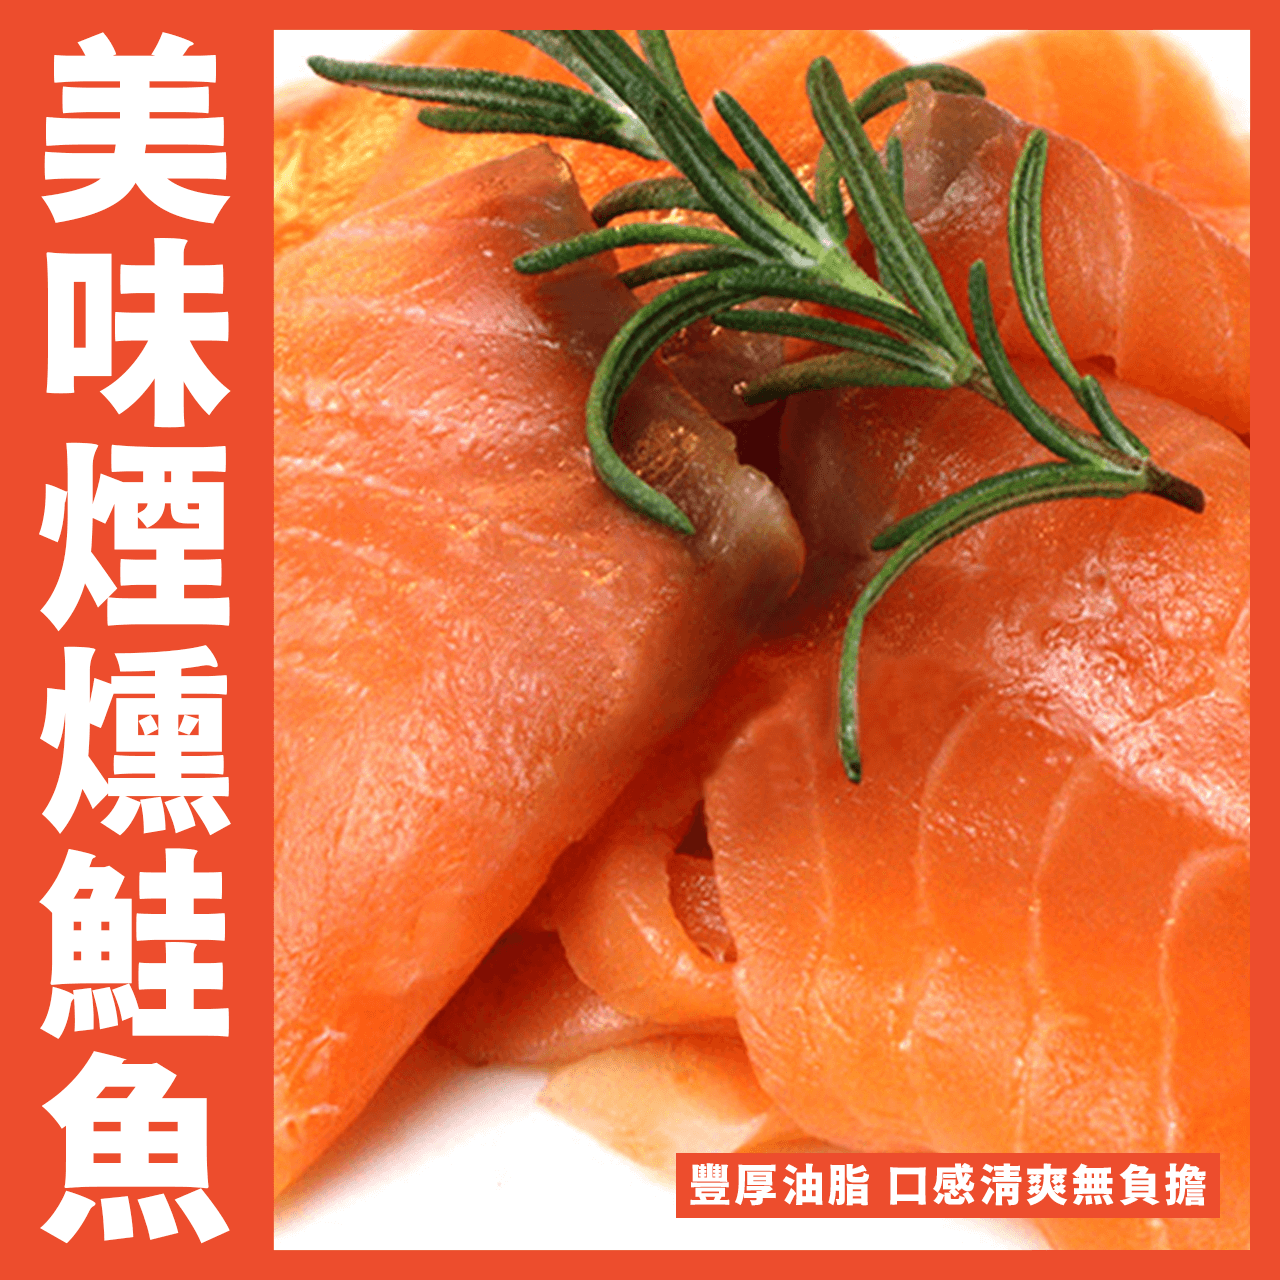 【天天來海鮮】超級好吃的煙燻鮭魚又到貨嘍  重量:100克 產地:智利